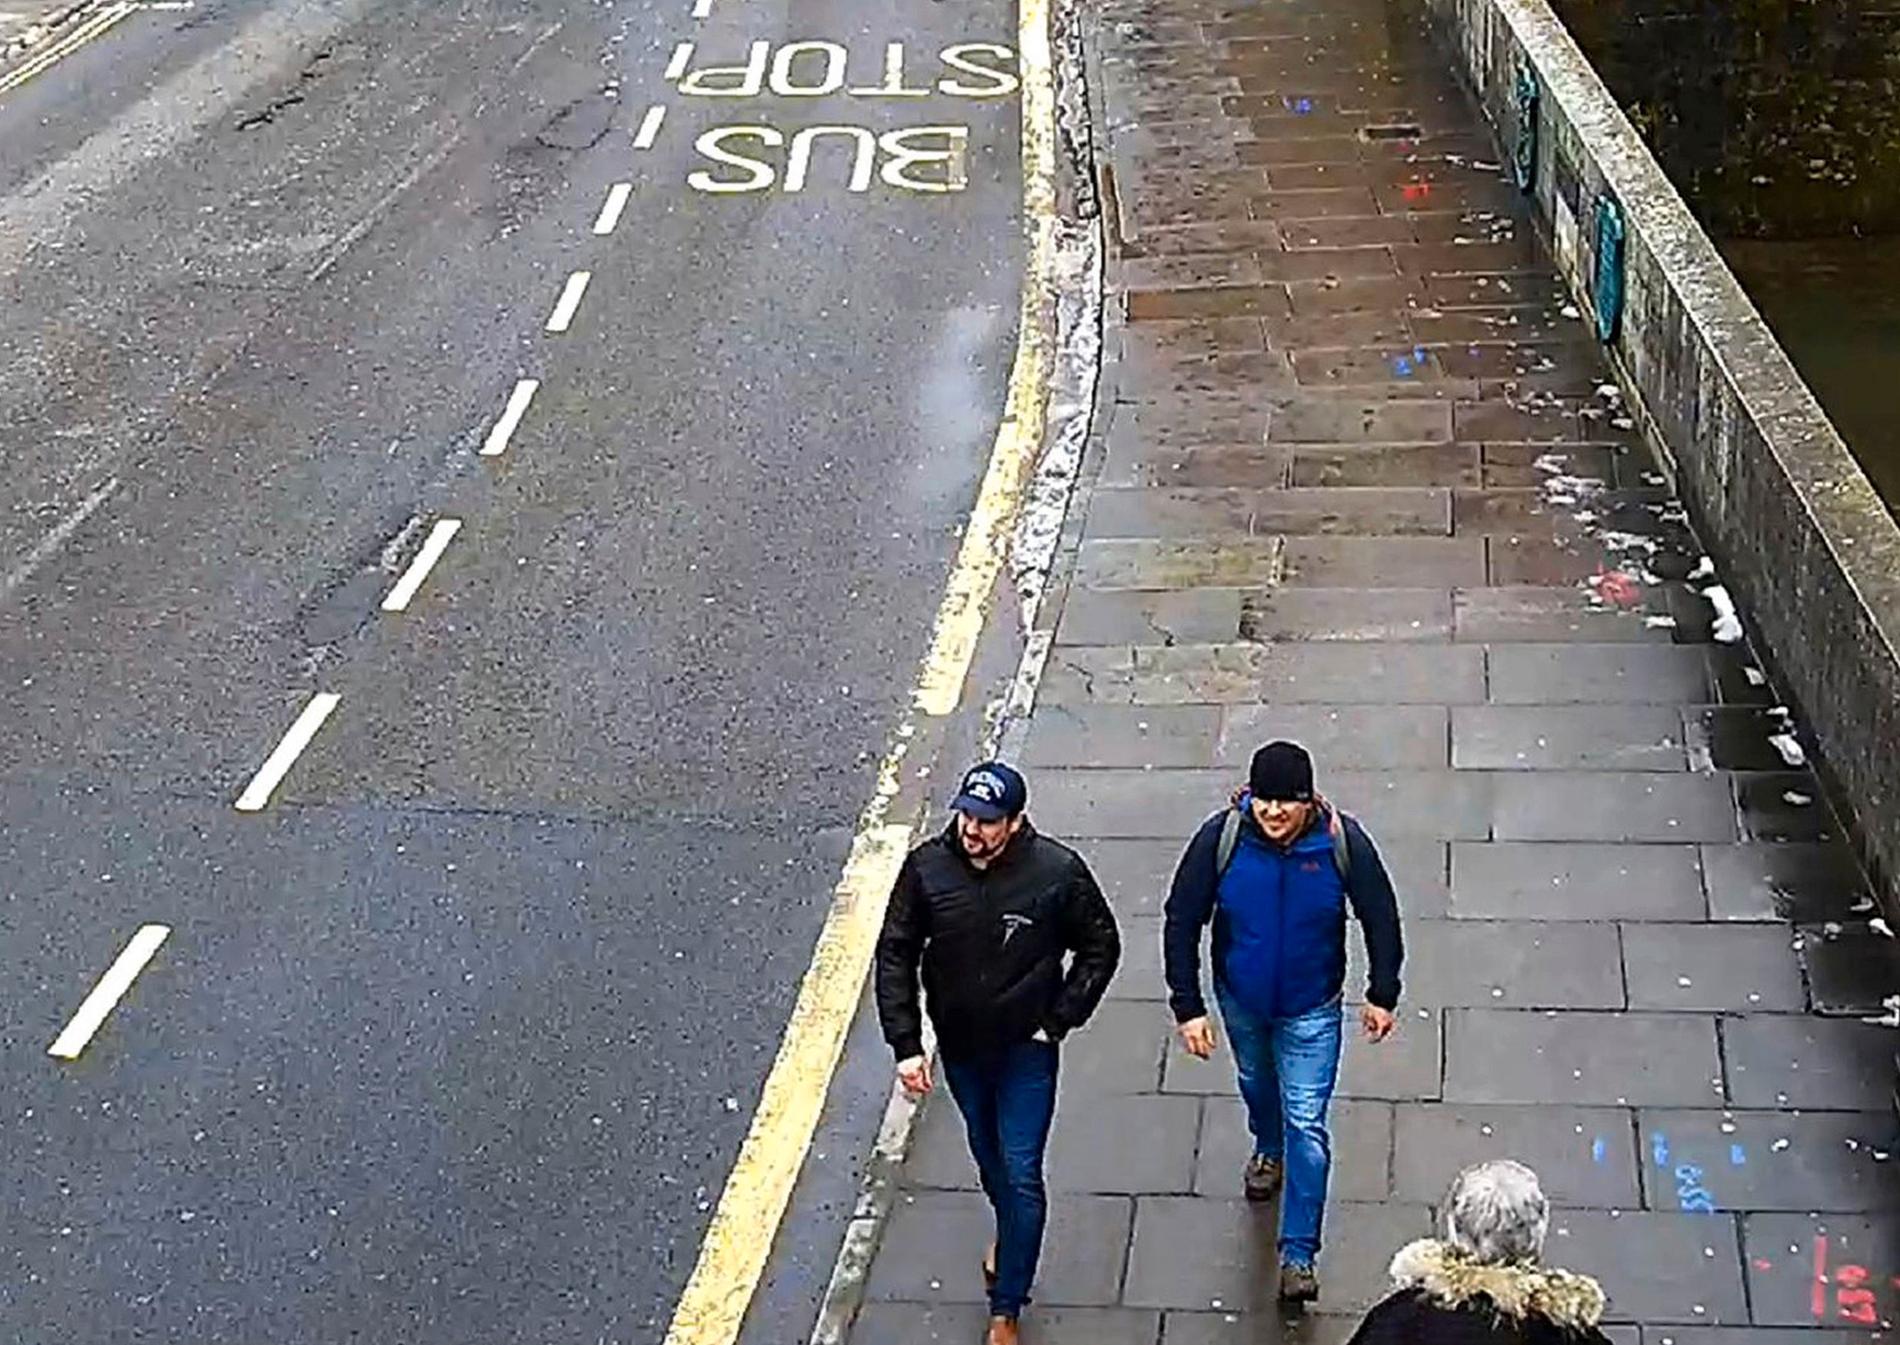 Här går de två ryska männen längs med en gata i Salisbury den 4 mars 2018, i samband med förgiftningen av Sergej och Julia Skripal. Arkivbild.